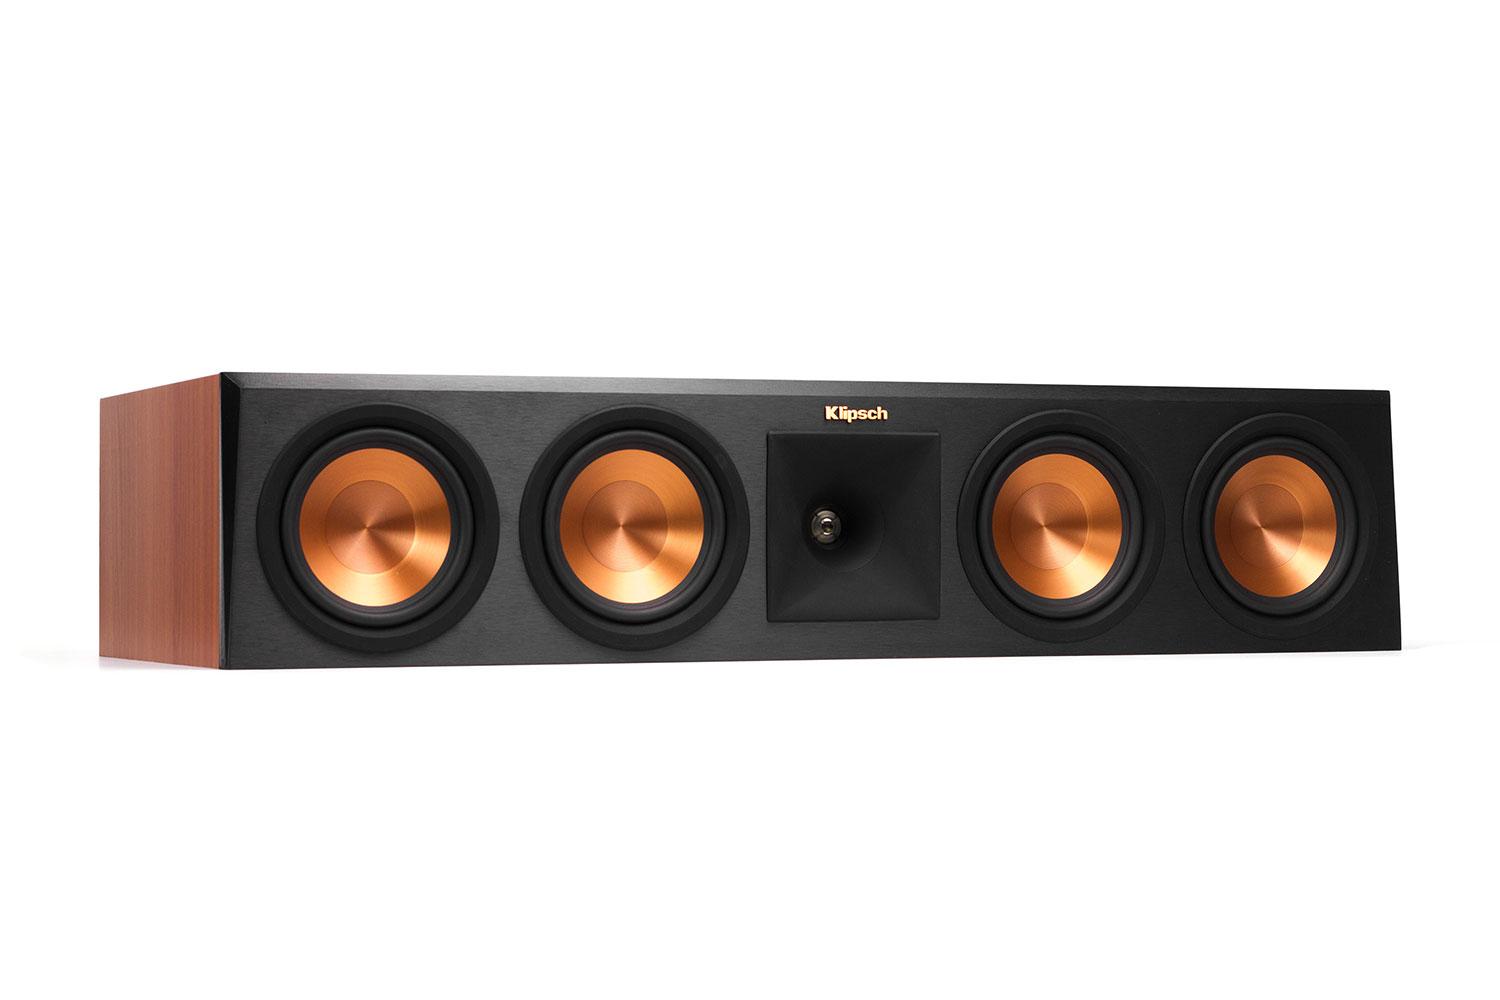 klipsch reference premier speaker system debuts at ces 2015 450c